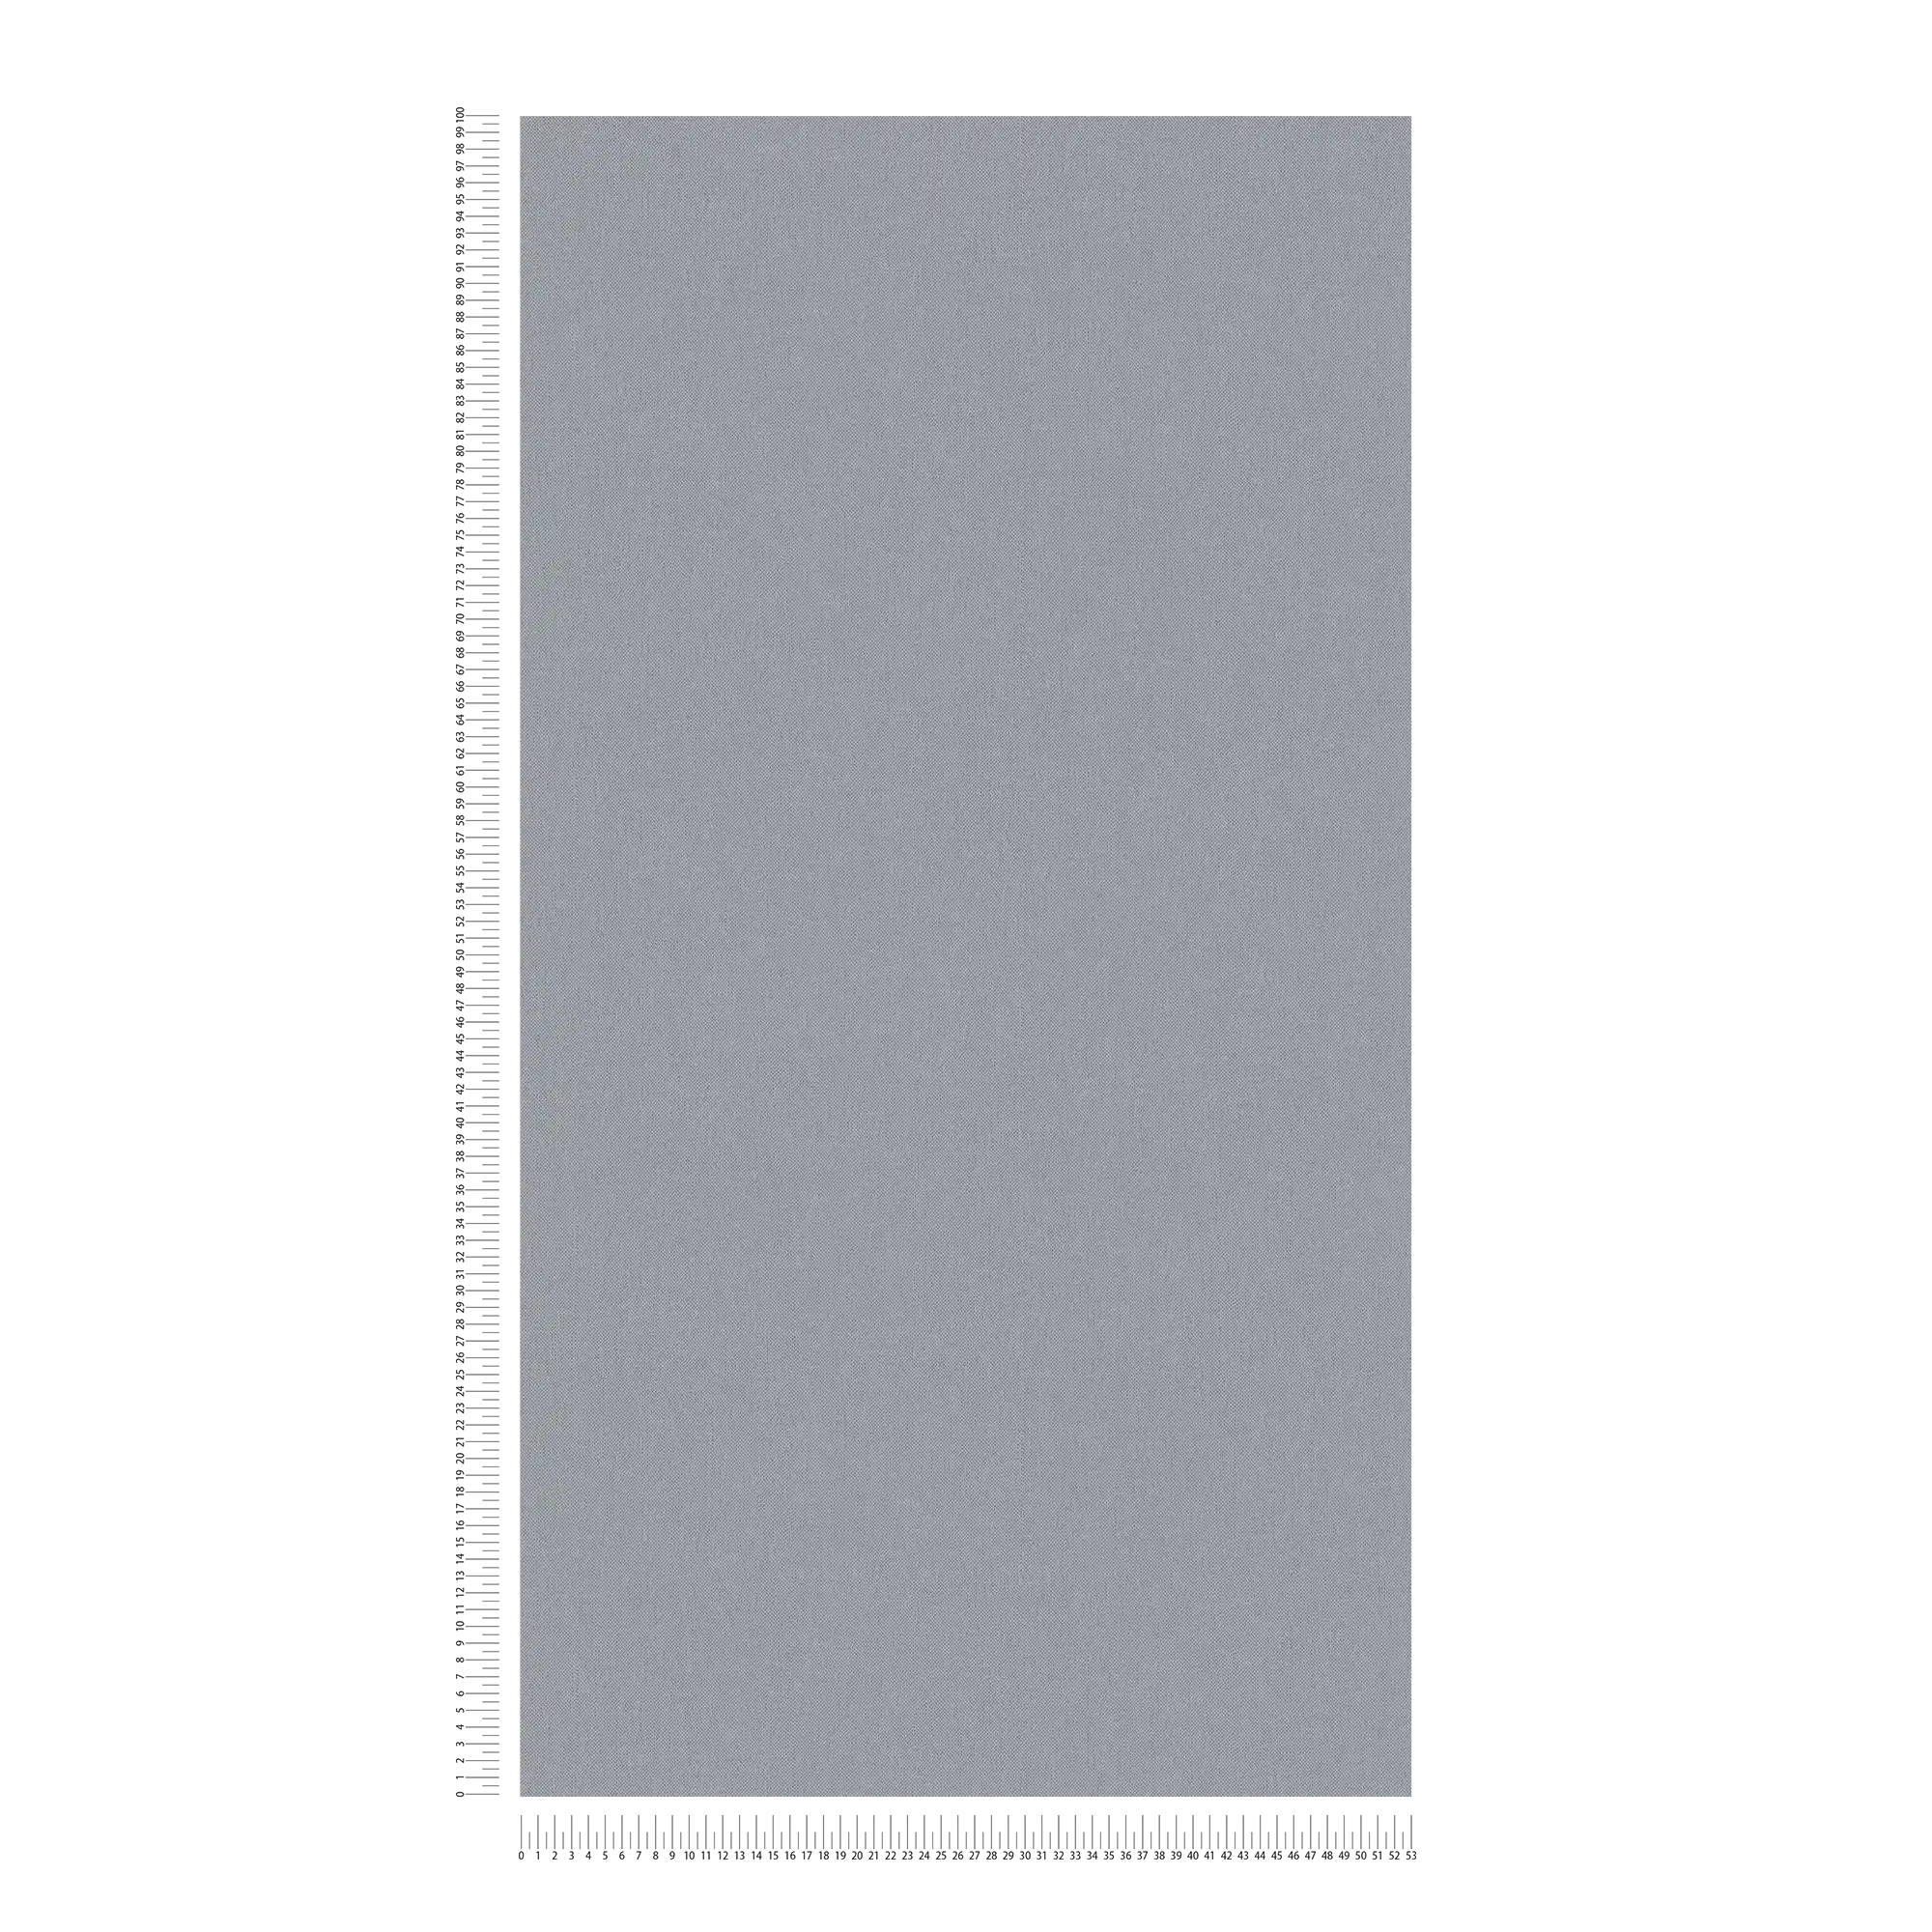             Papier peint aspect lin gris avec structure tissée & surface mate
        